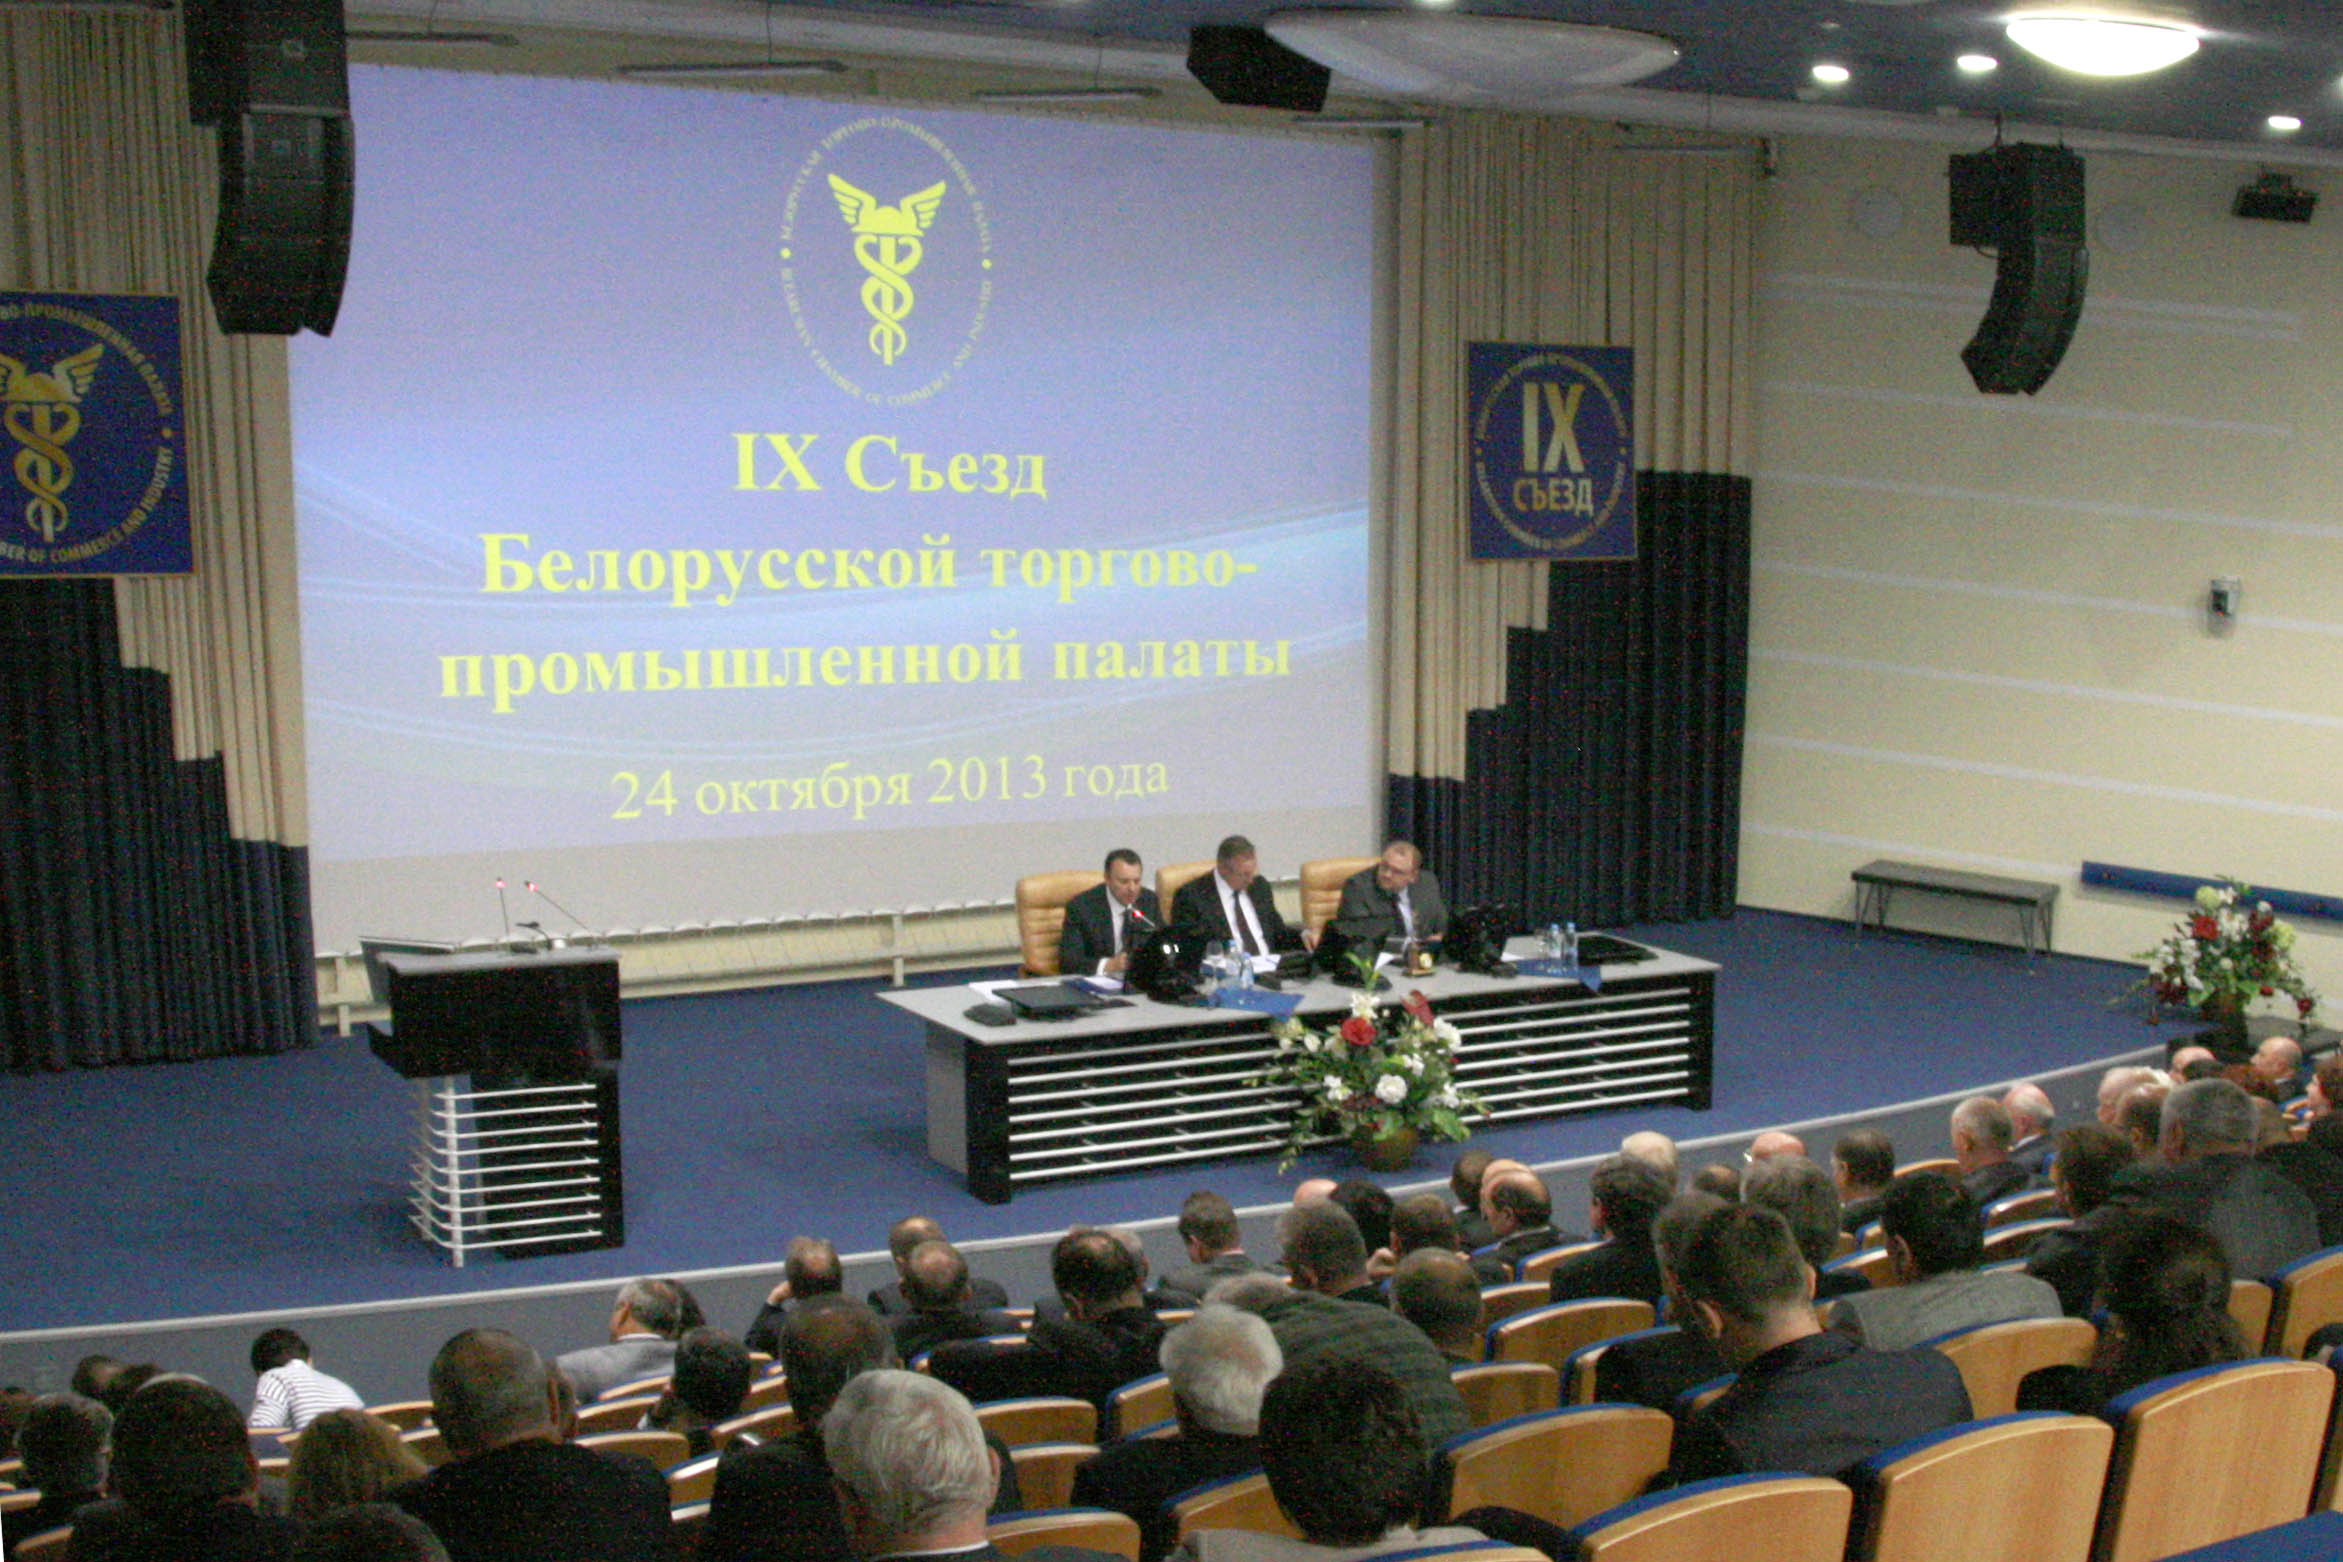 IX Съезд Белорусской торгово-промышленной палаты состоялся в Минске